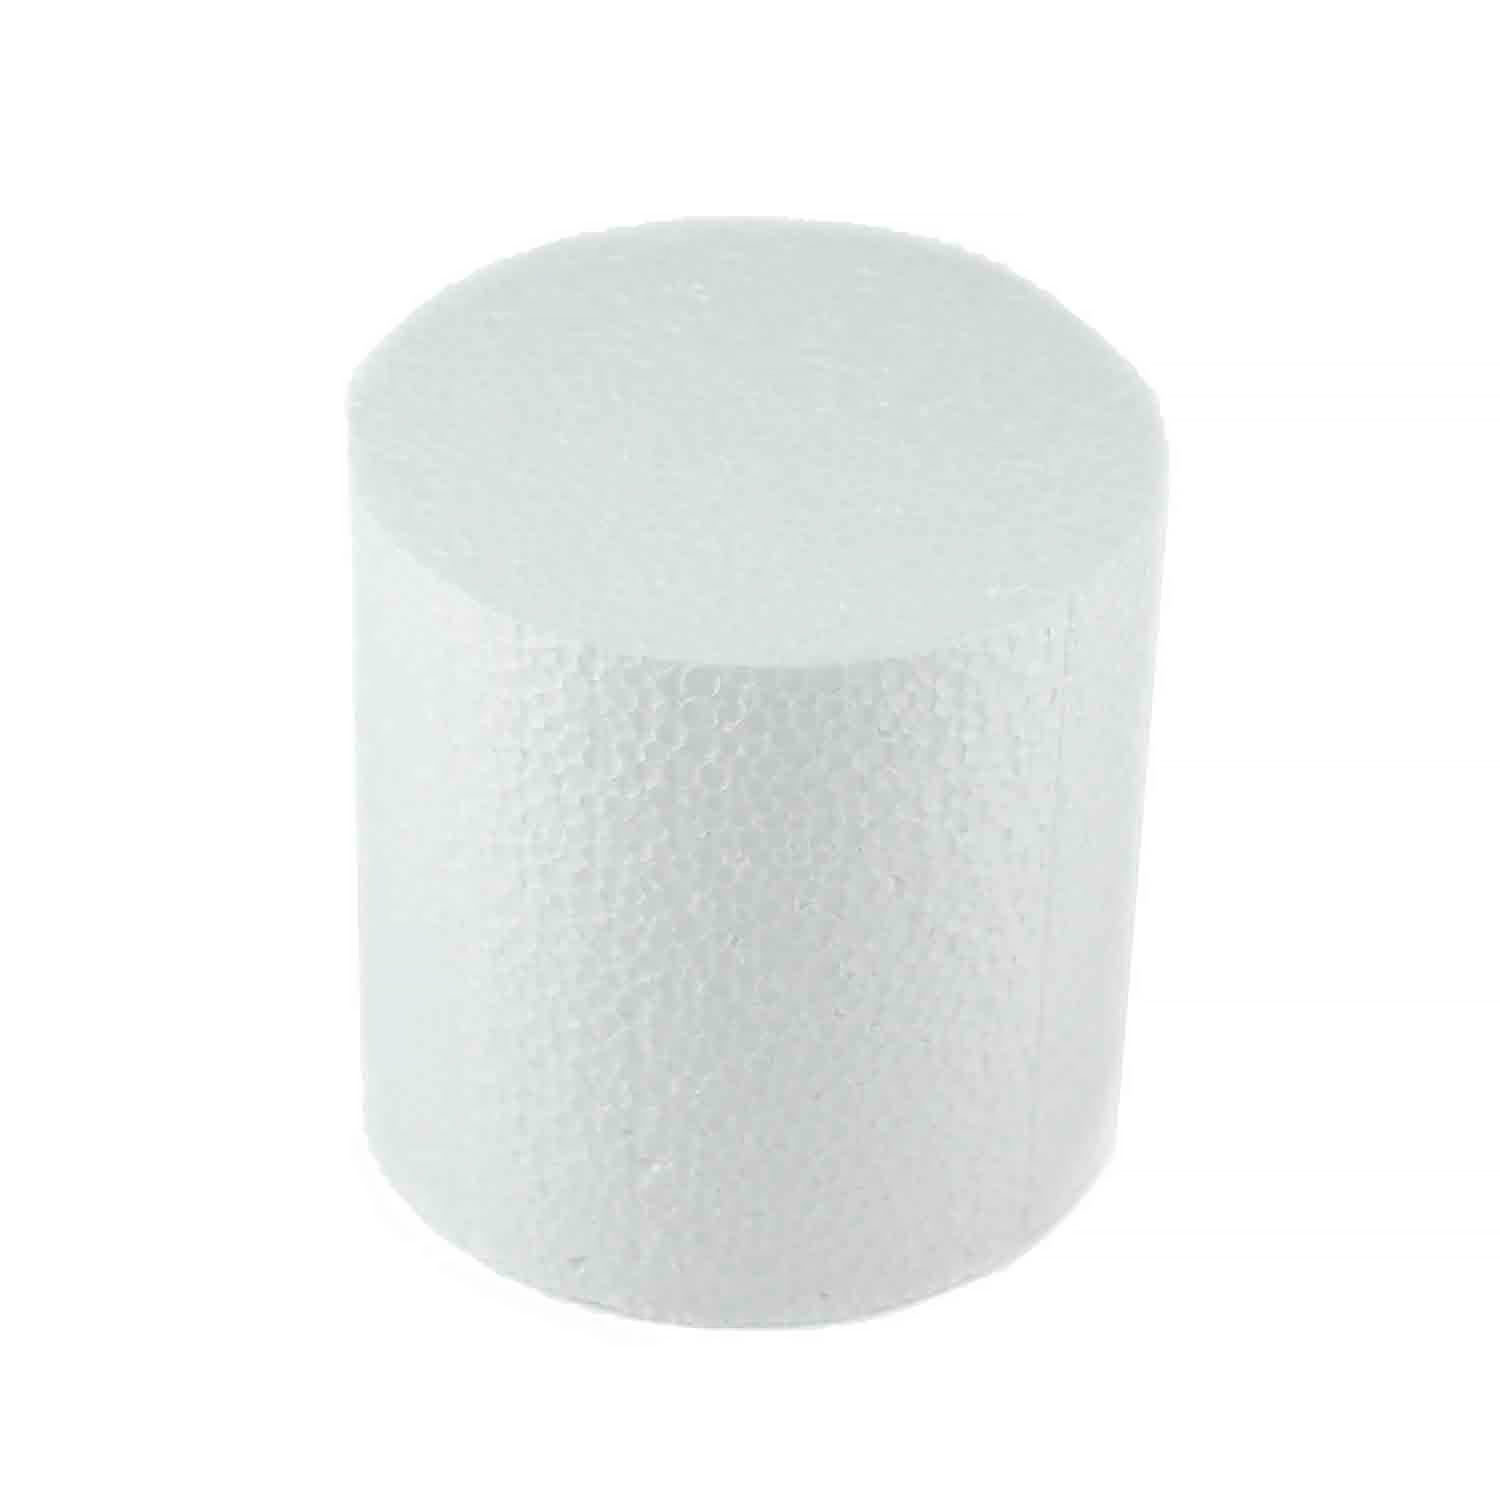 4" x 4" Round White Styrofoam Cake Dummy